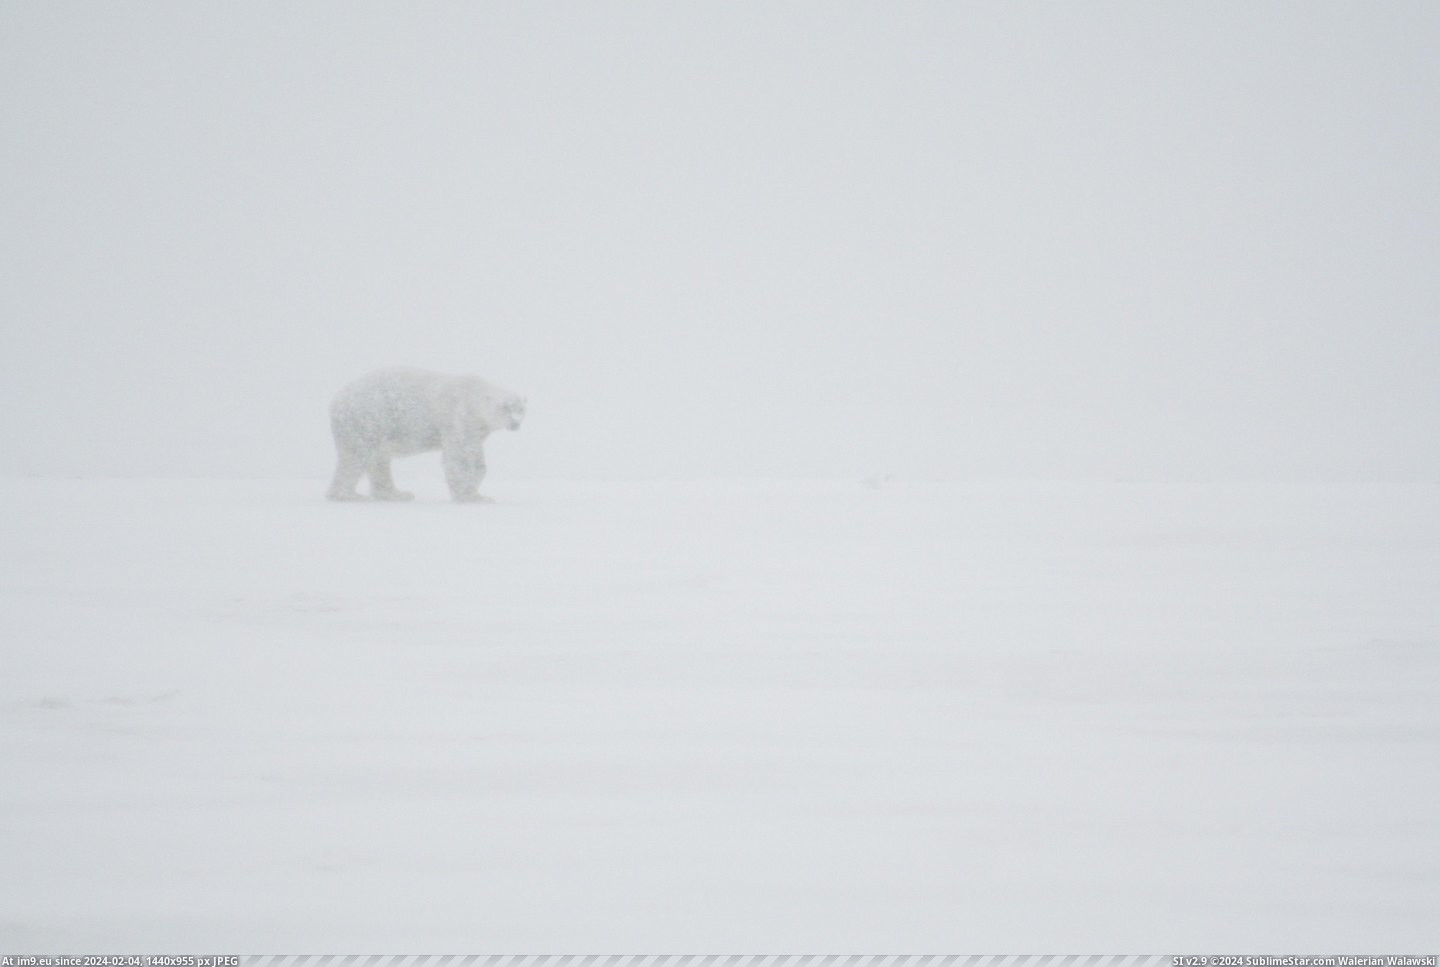 #Alaska #Bear #Snowstorm #Polar #Actual [Pics] An actual polar bear in an actual snowstorm. Took this in Alaska. Pic. (Obraz z album My r/PICS favs))